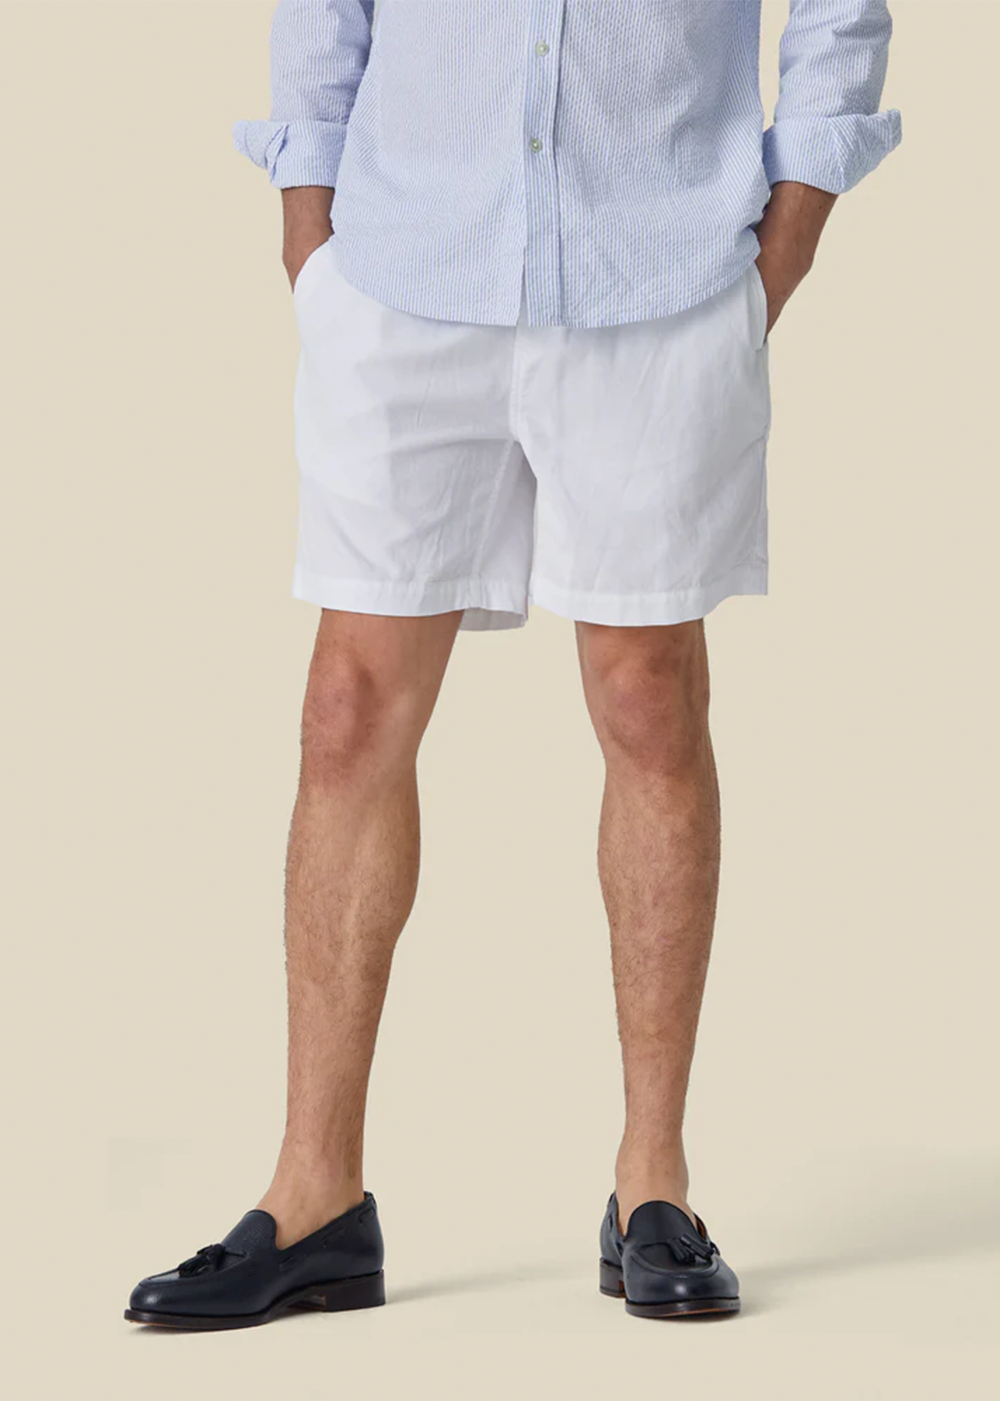 Cord Men's Shorts - White - Portuguese Flannel Canada - Danali